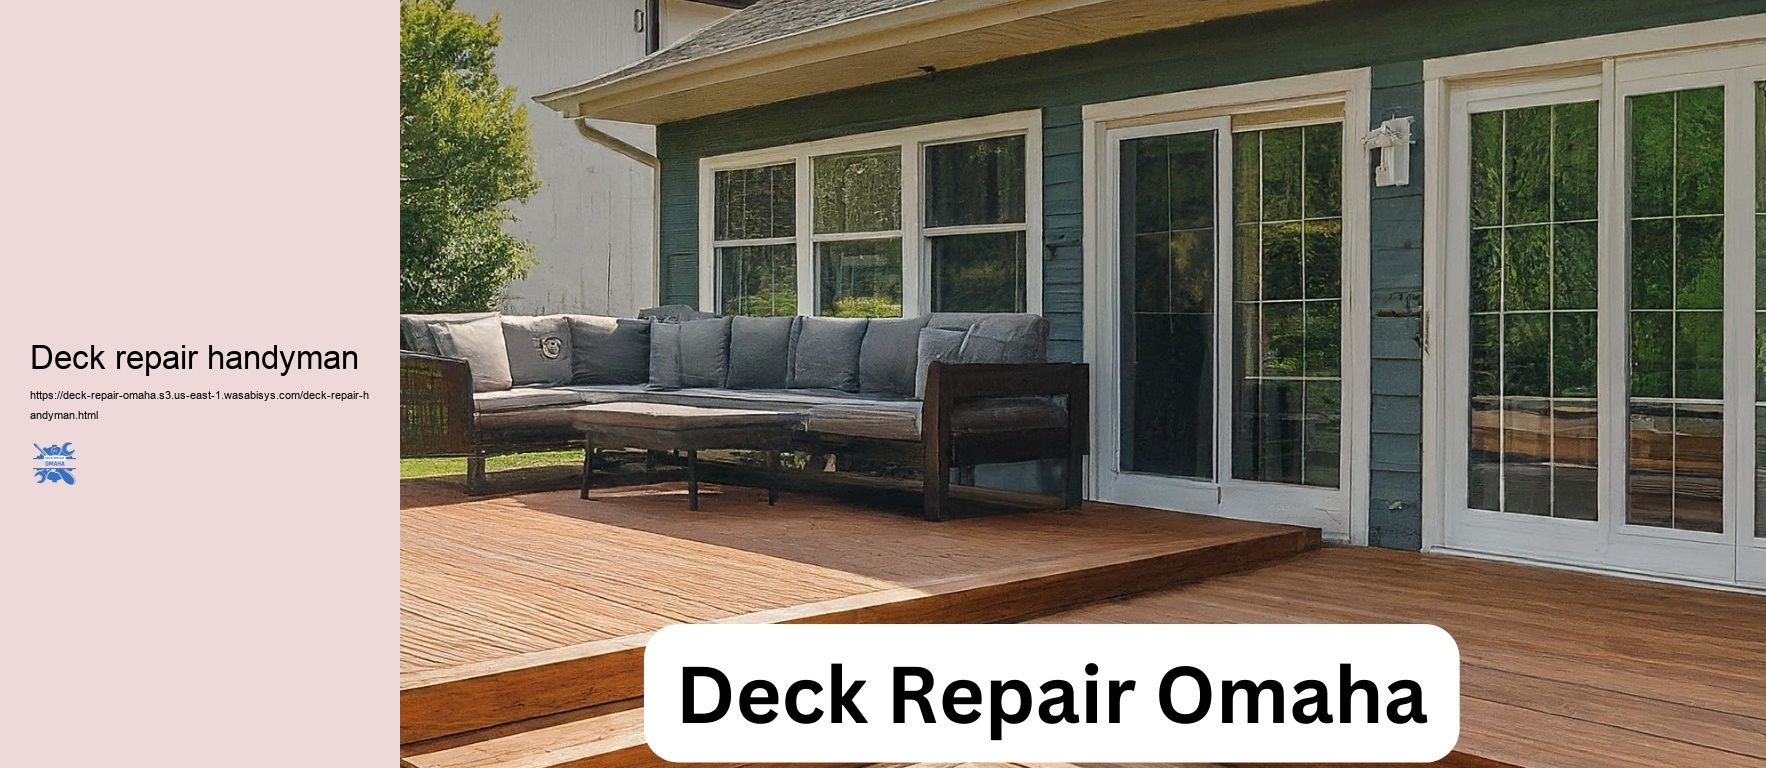 Deck repair handyman